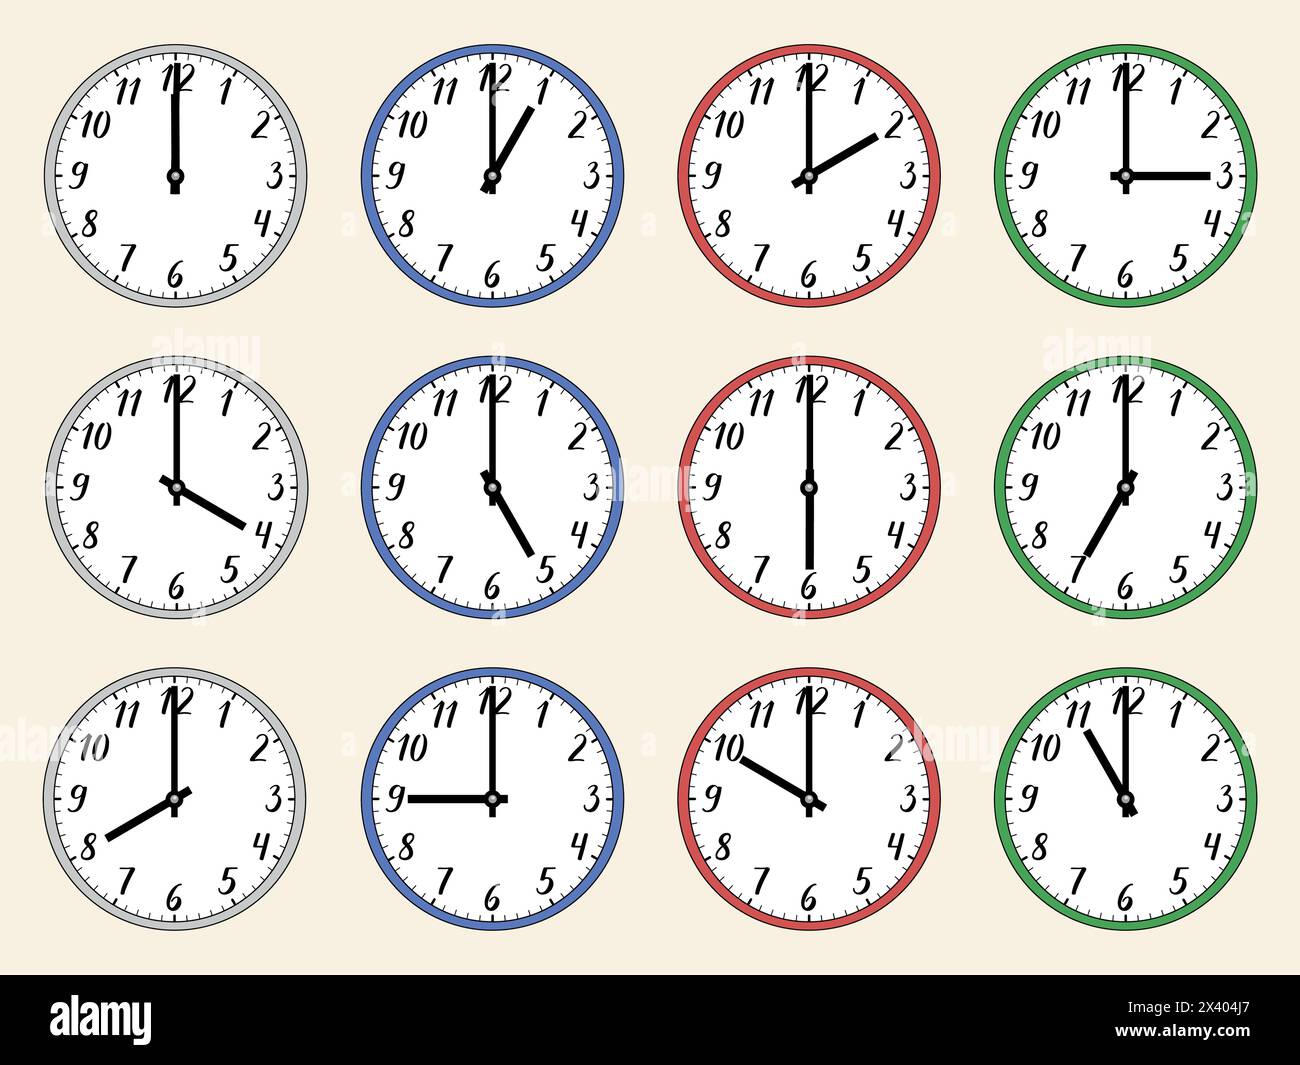 Illustrazione vettoriale di un orologio analogico 24 ore su 24 con numeri scritti a mano. 1, 2, 3, 4, 5, 6, 7, 8, 9, 10, 11, 12, 13, 14, 15, 16, 17, 18, 19, 20, 21, 22 Illustrazione Vettoriale